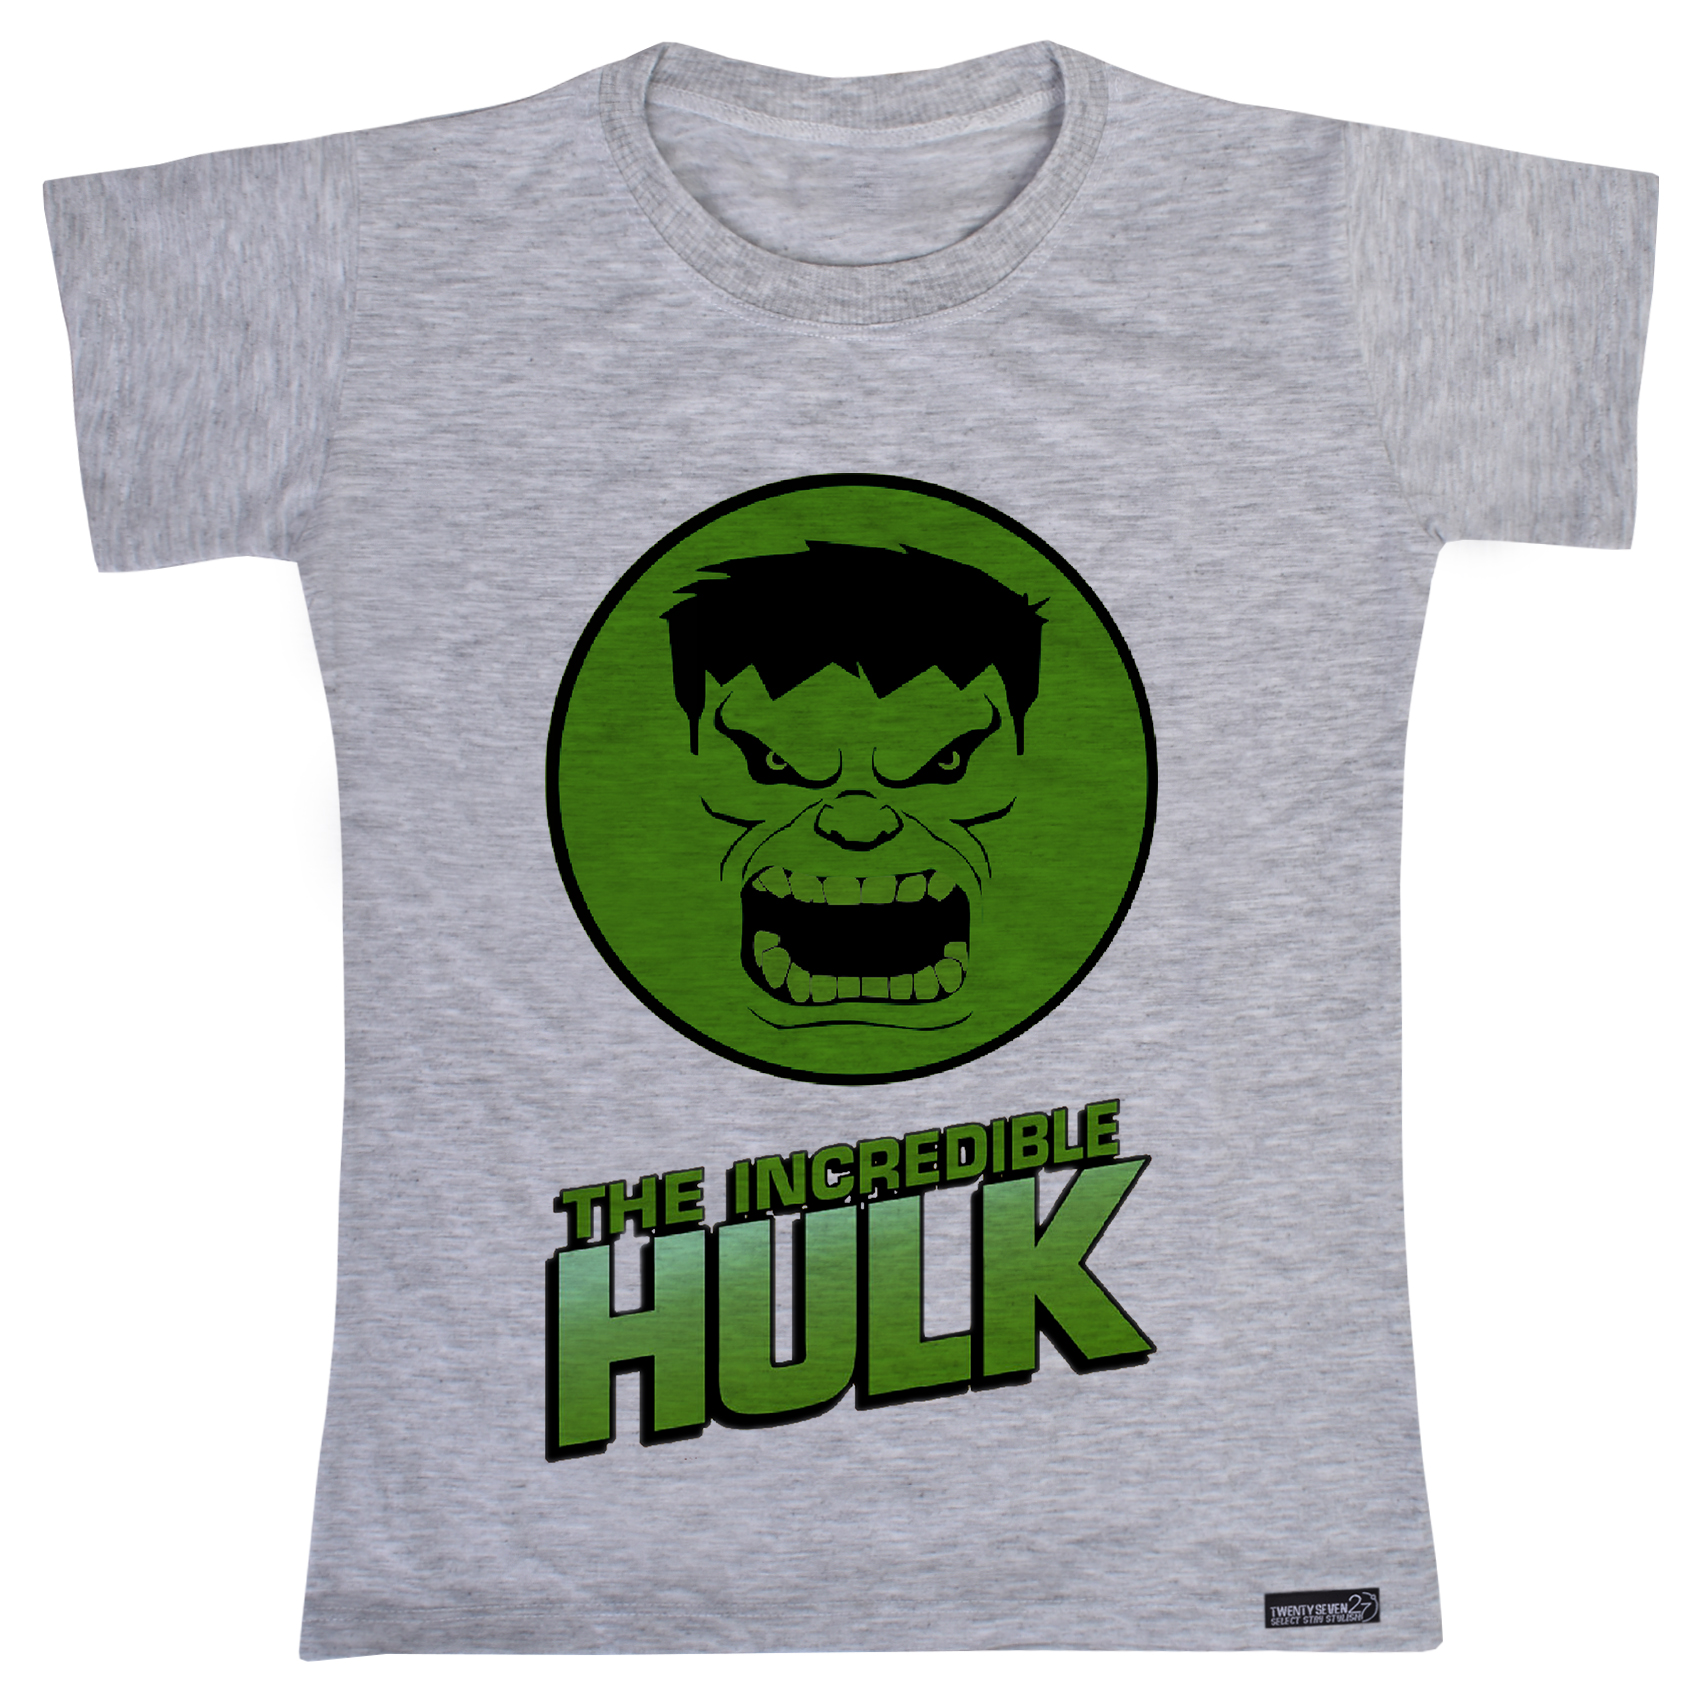 تی شرت آستین کوتاه پسرانه 27 مدل Hulk کد MH909